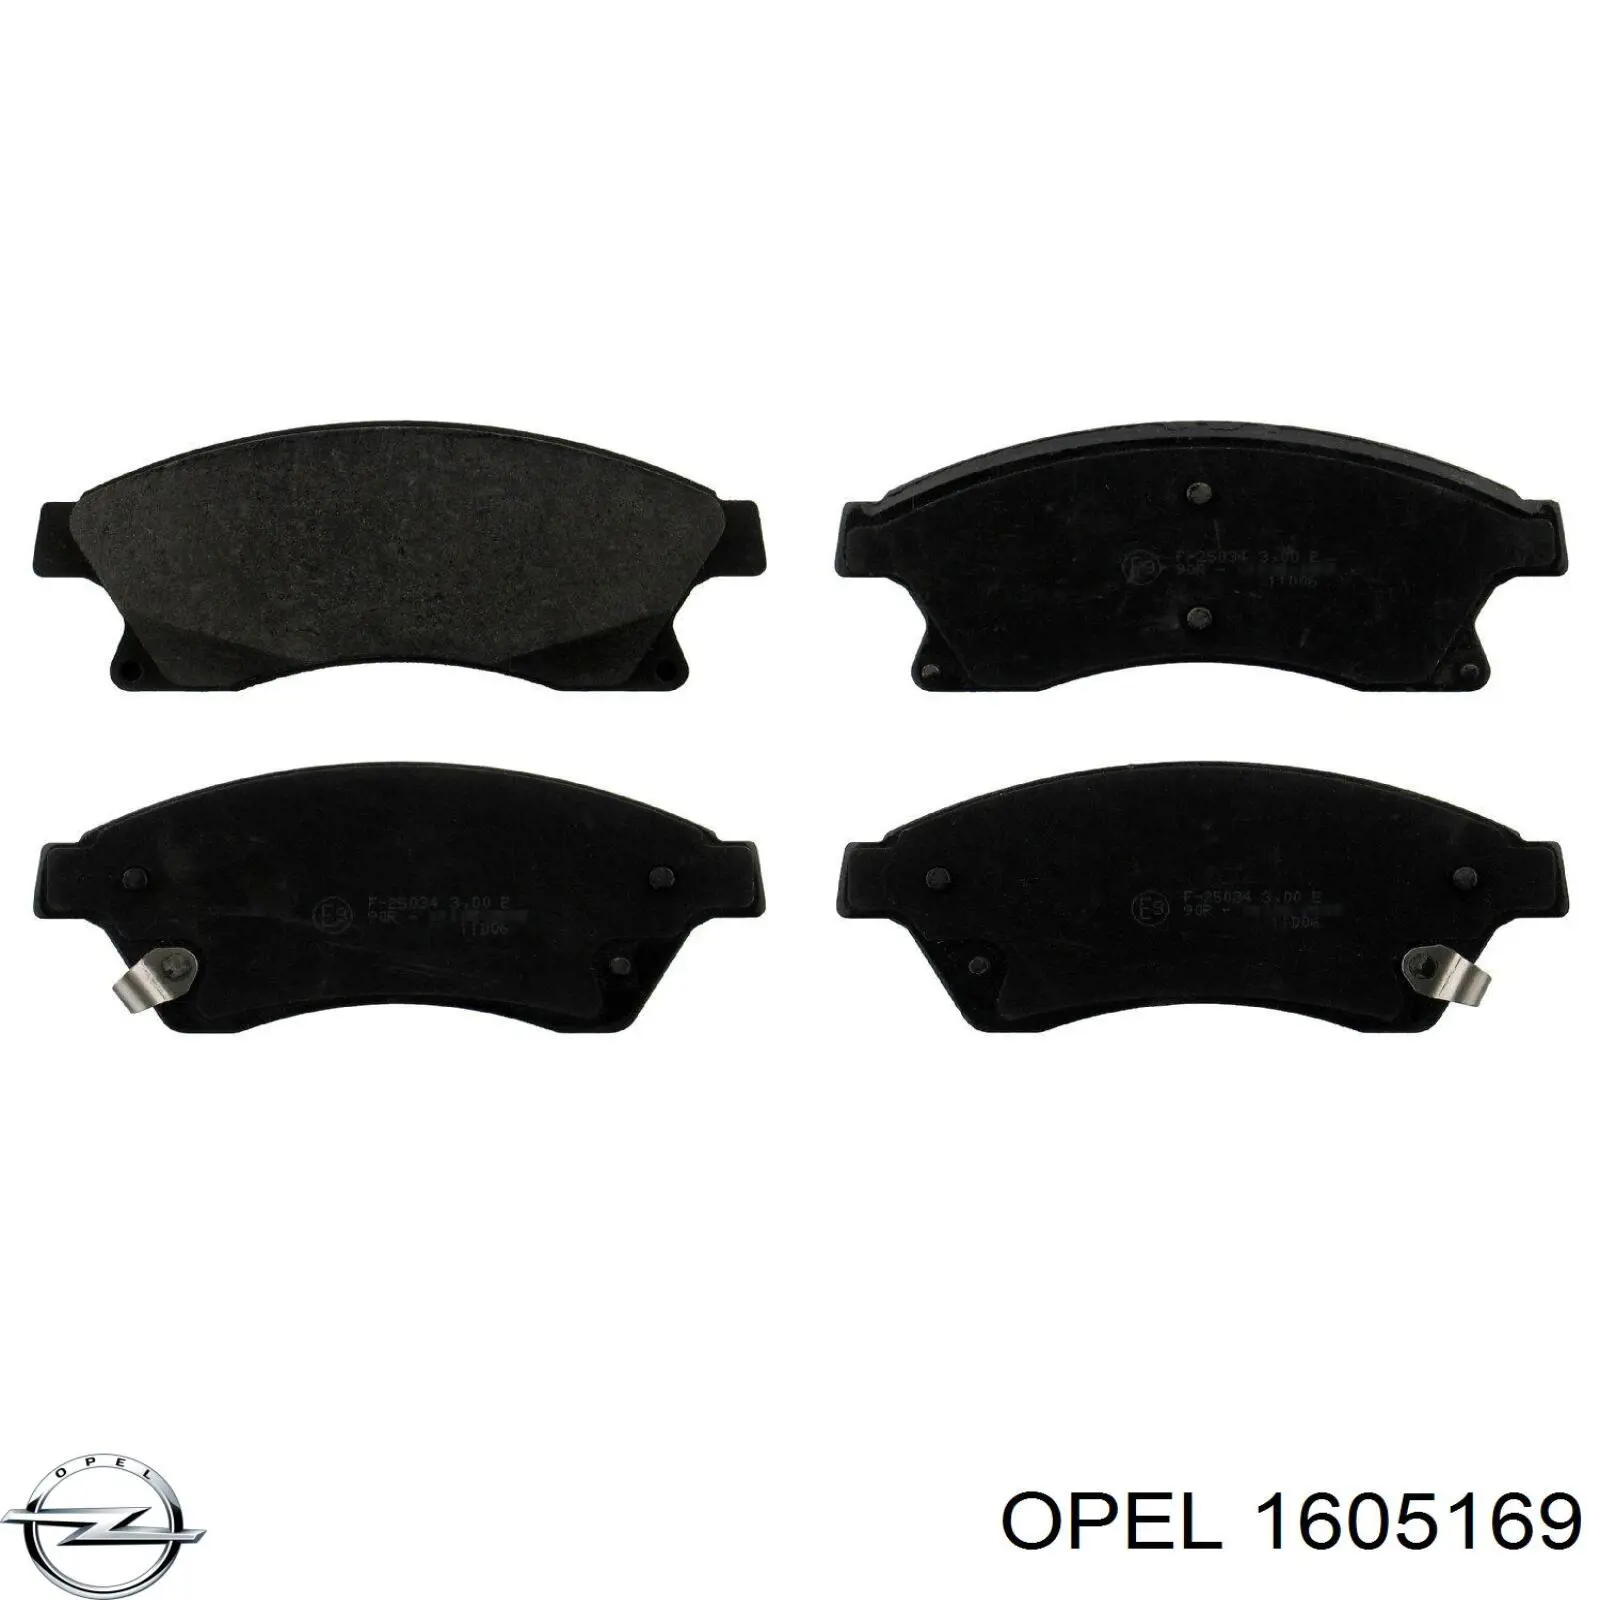 1605169 Opel колодки тормозные передние дисковые